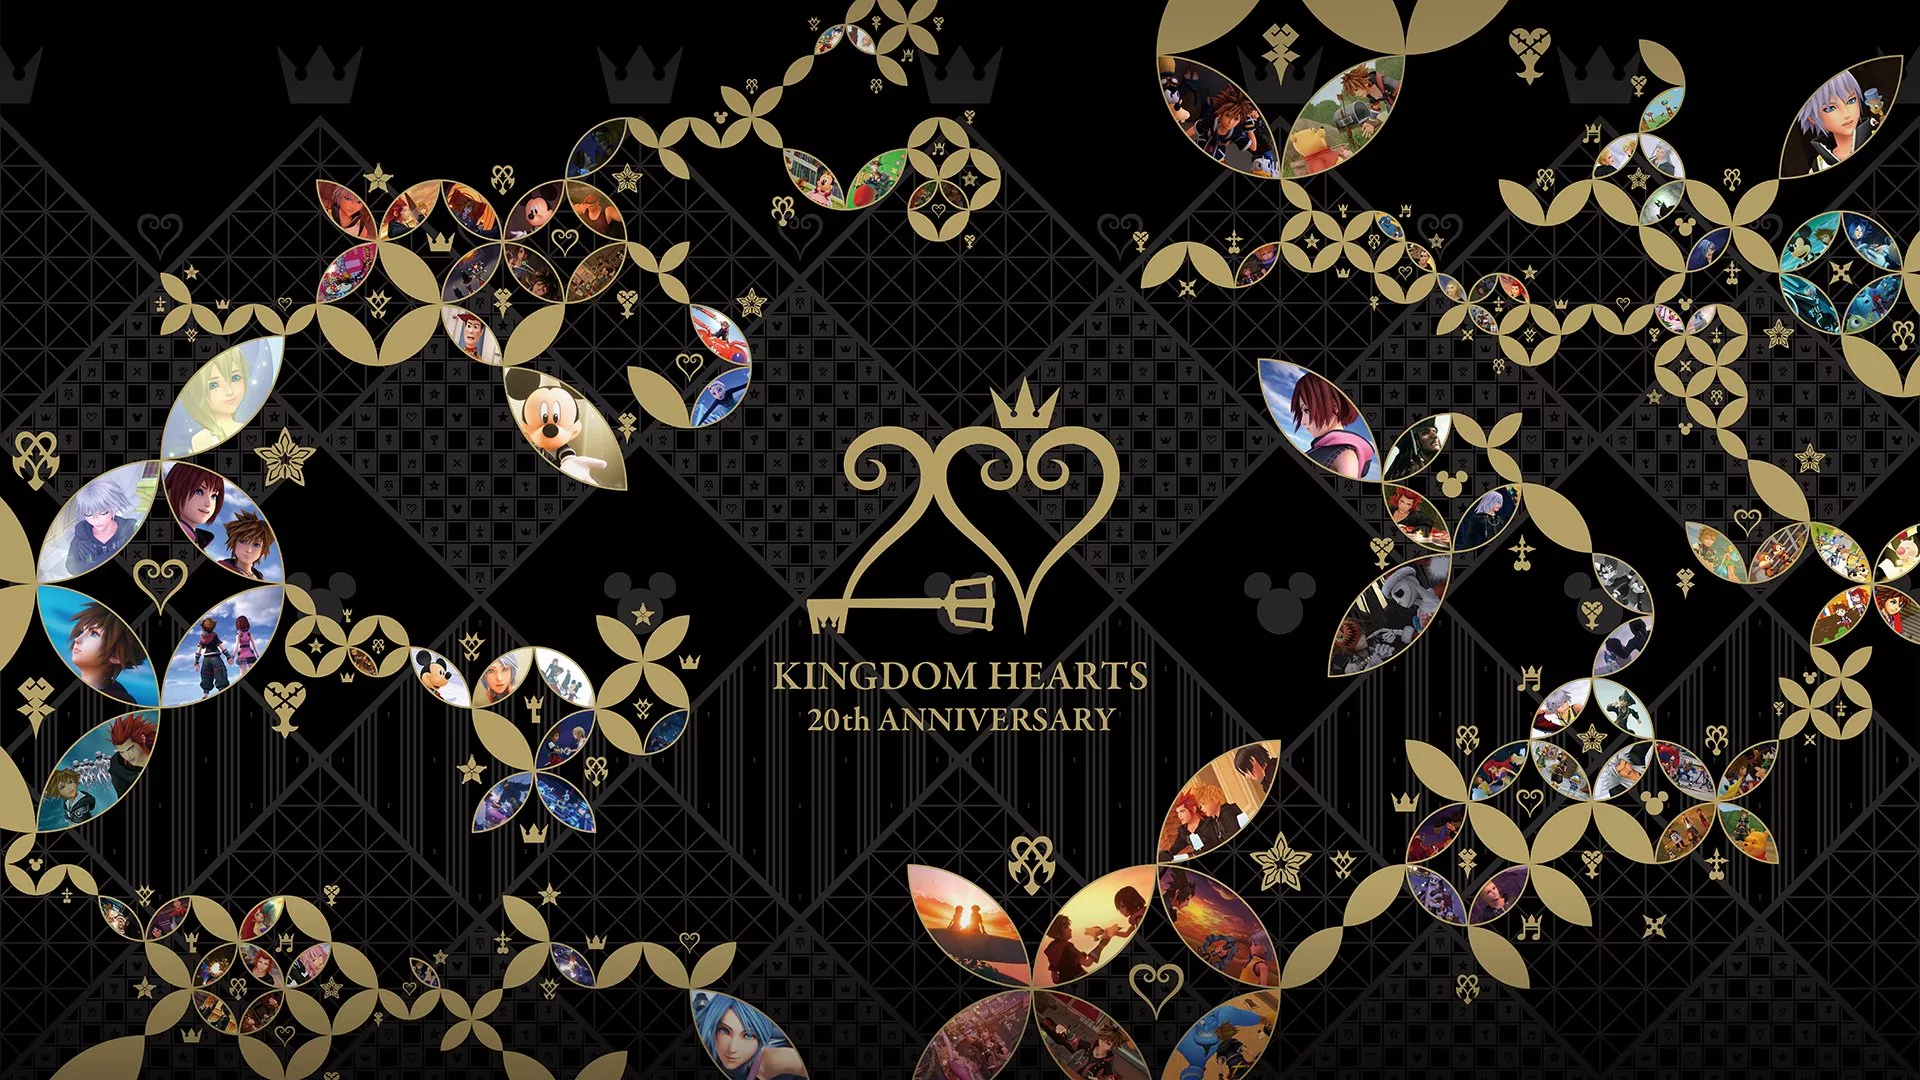 Kingdom Hearts: Event zum 20. Jubiläum auf 10. April datiert Heropic